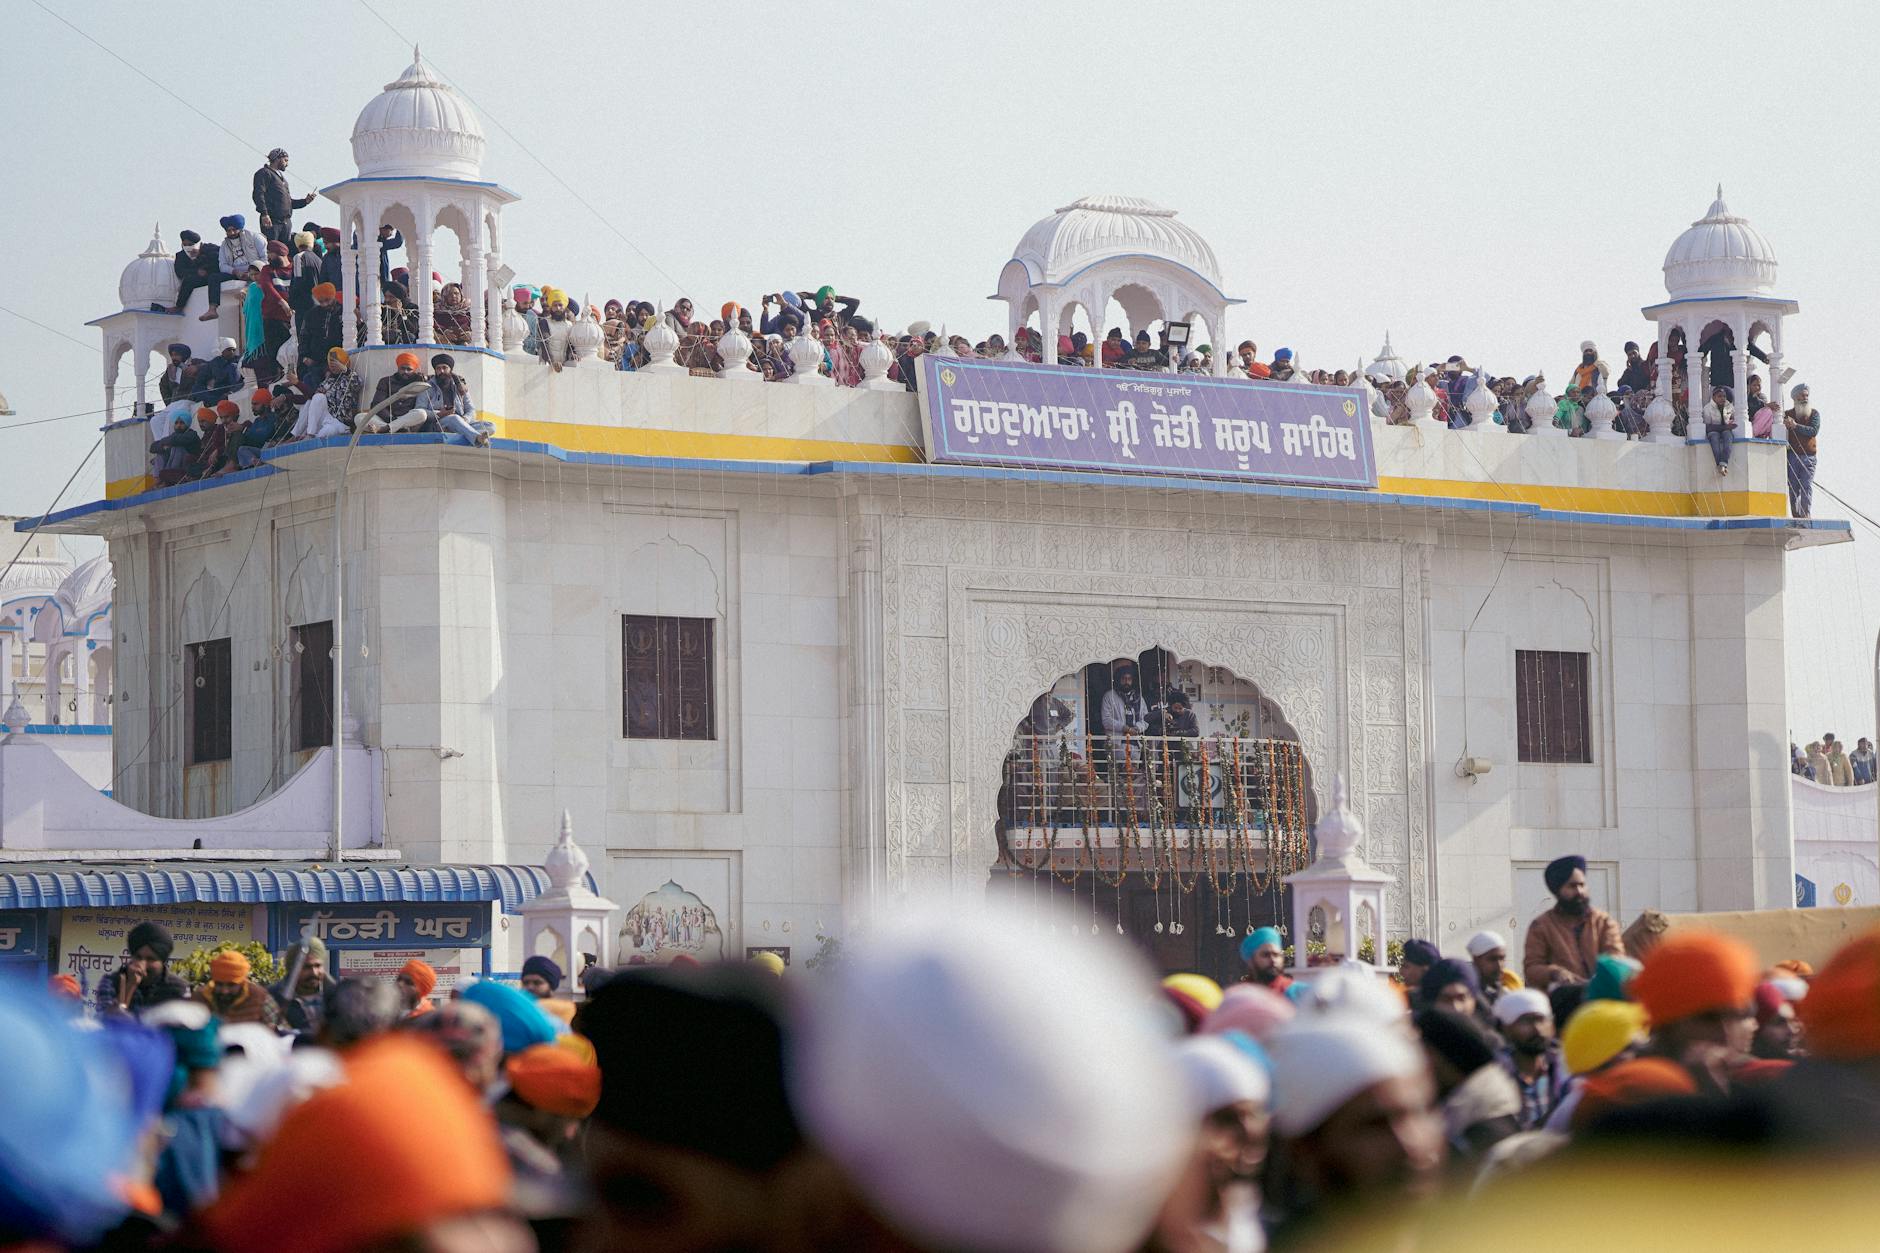 crowd during a celebration around the gurudwara sri jyoti saroop sahib punjab india